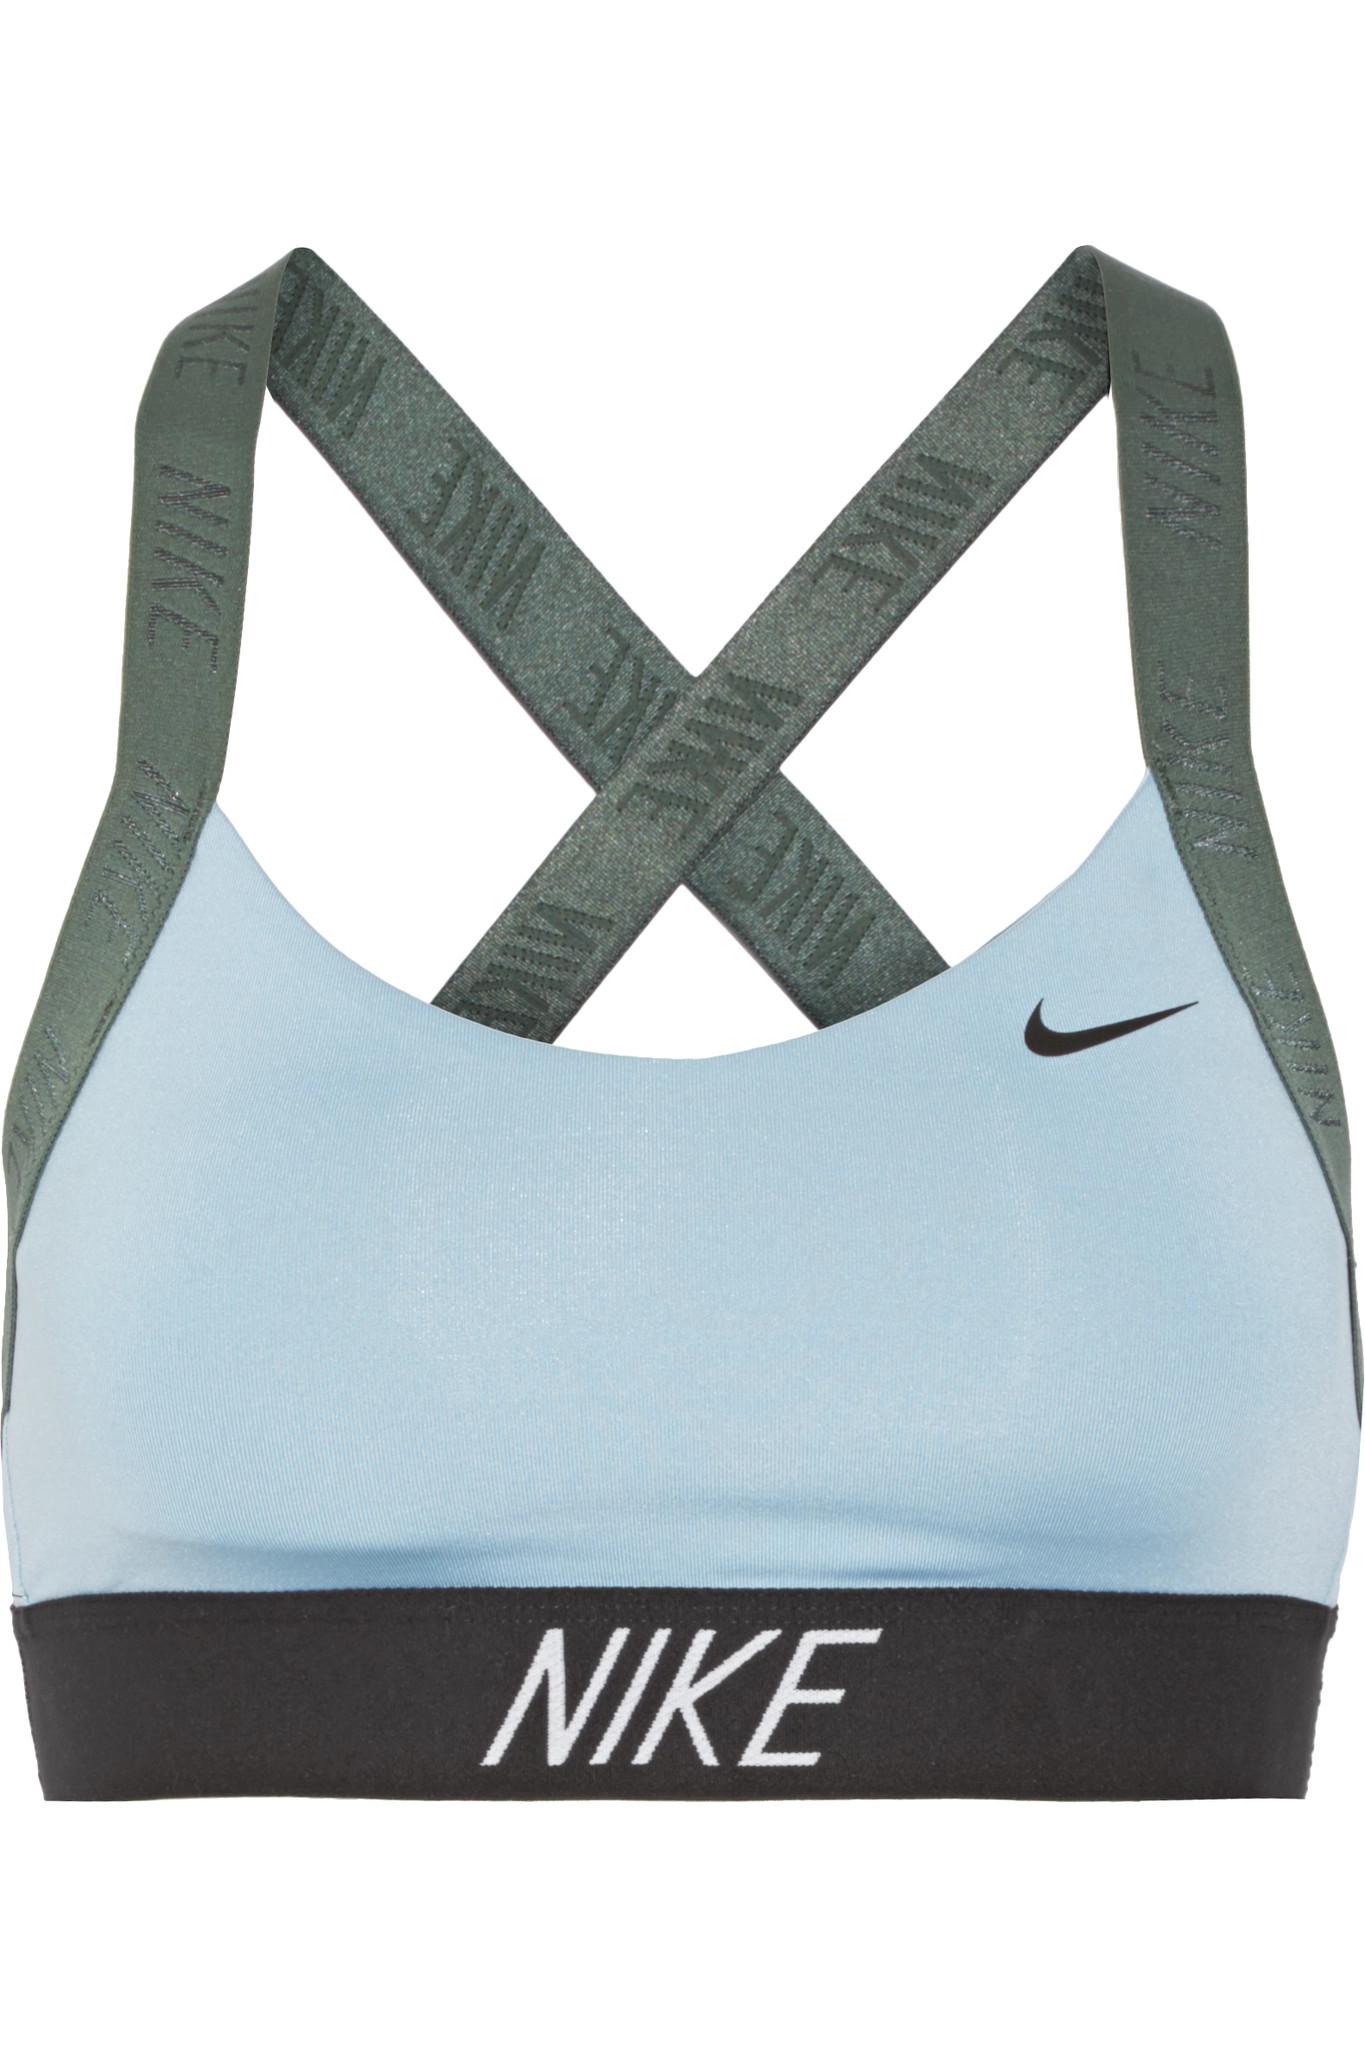 Nike Pro Indy Dri-fit Stretch Sports Bra in Light Blue (Blue) | Lyst Canada